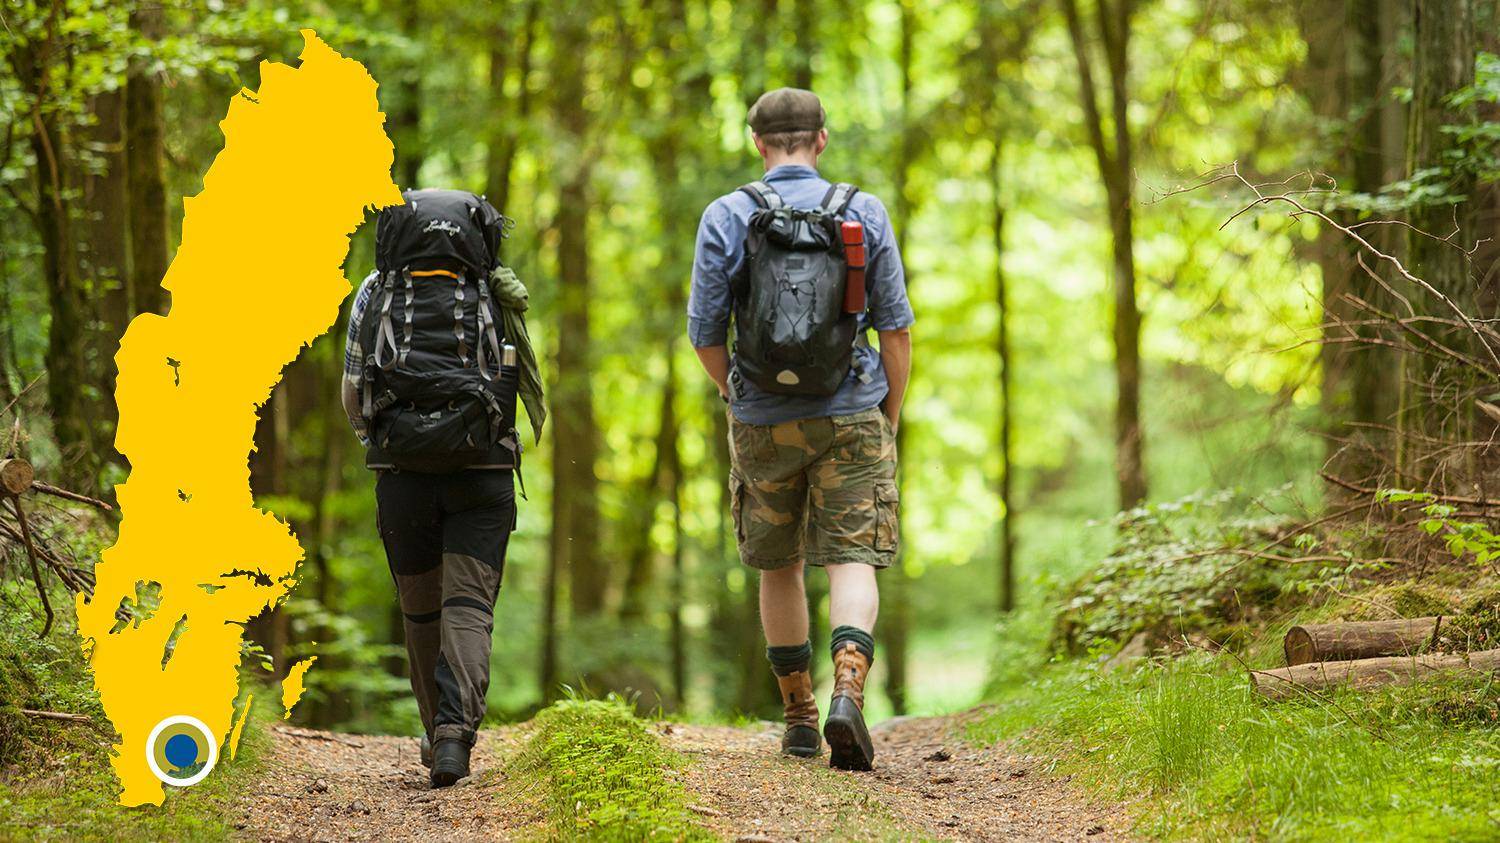 Twee mensen die met rugzakken in een bos wandelen. De afbeelding toont een gele kaart van Zweden met een markering die de locatie van Hemsjö aangeeft.